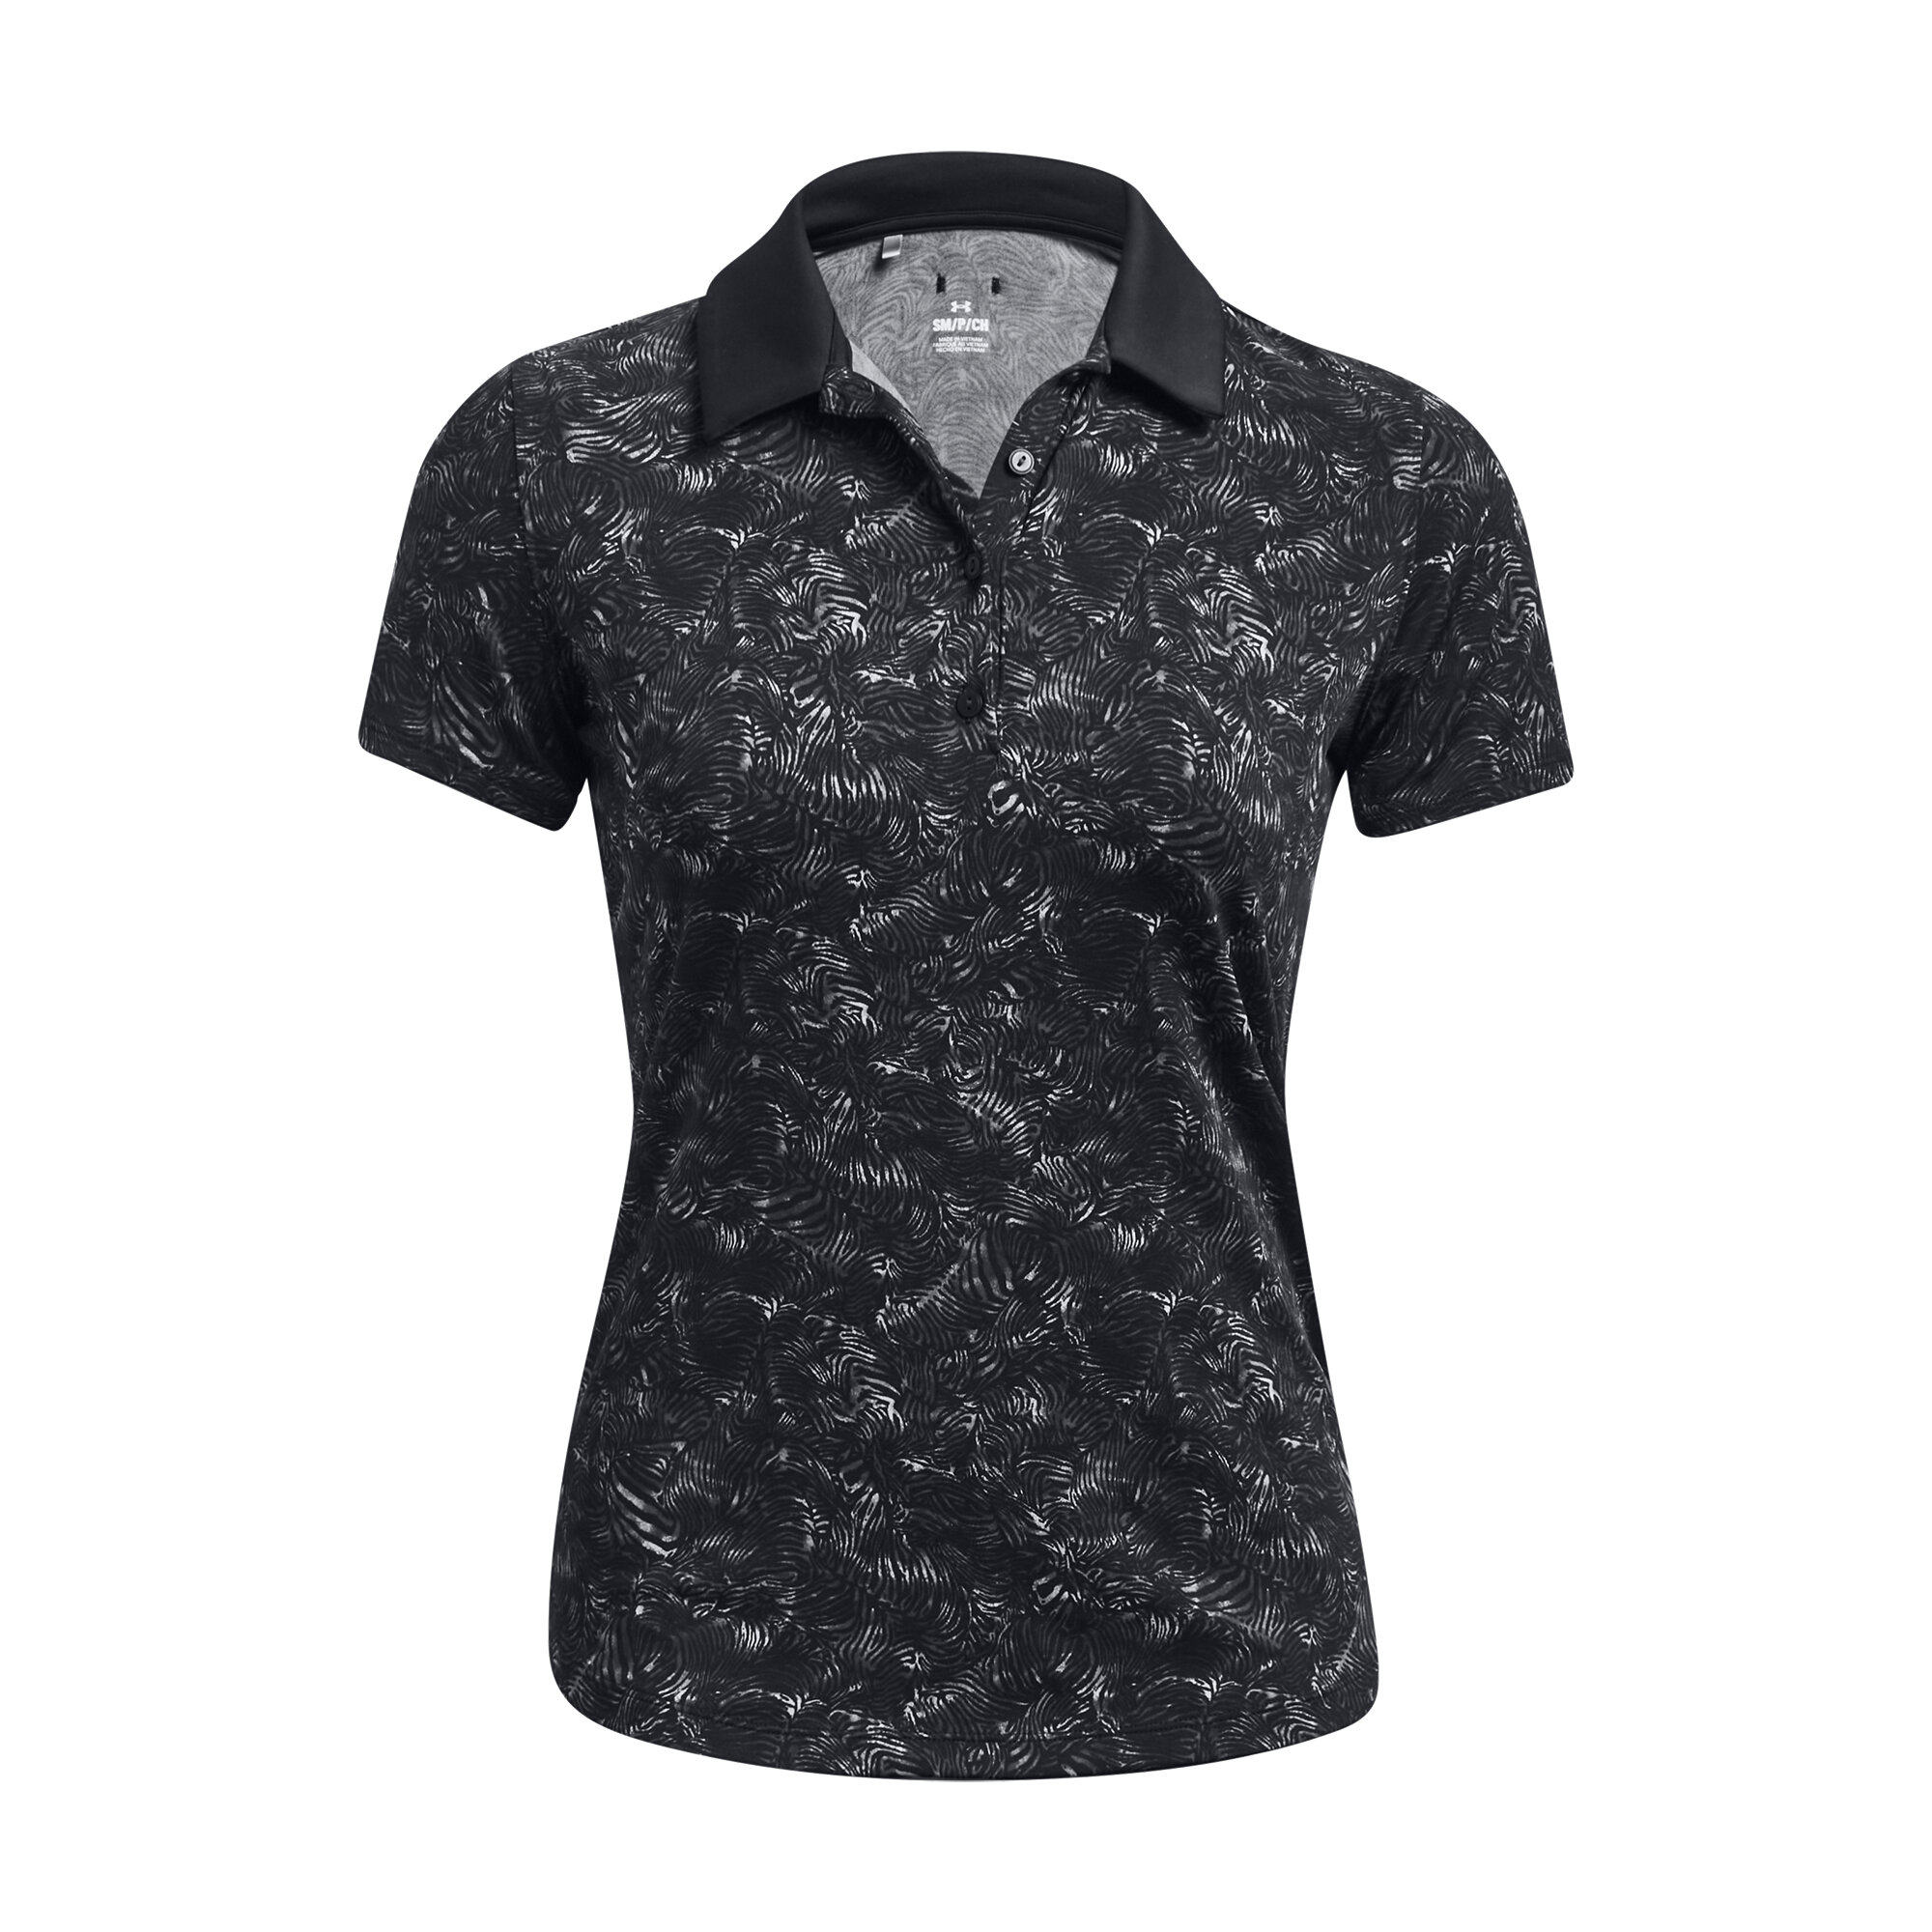 Under Armour Playoff Printed SS dámské golfové triko, černé, vel. XL